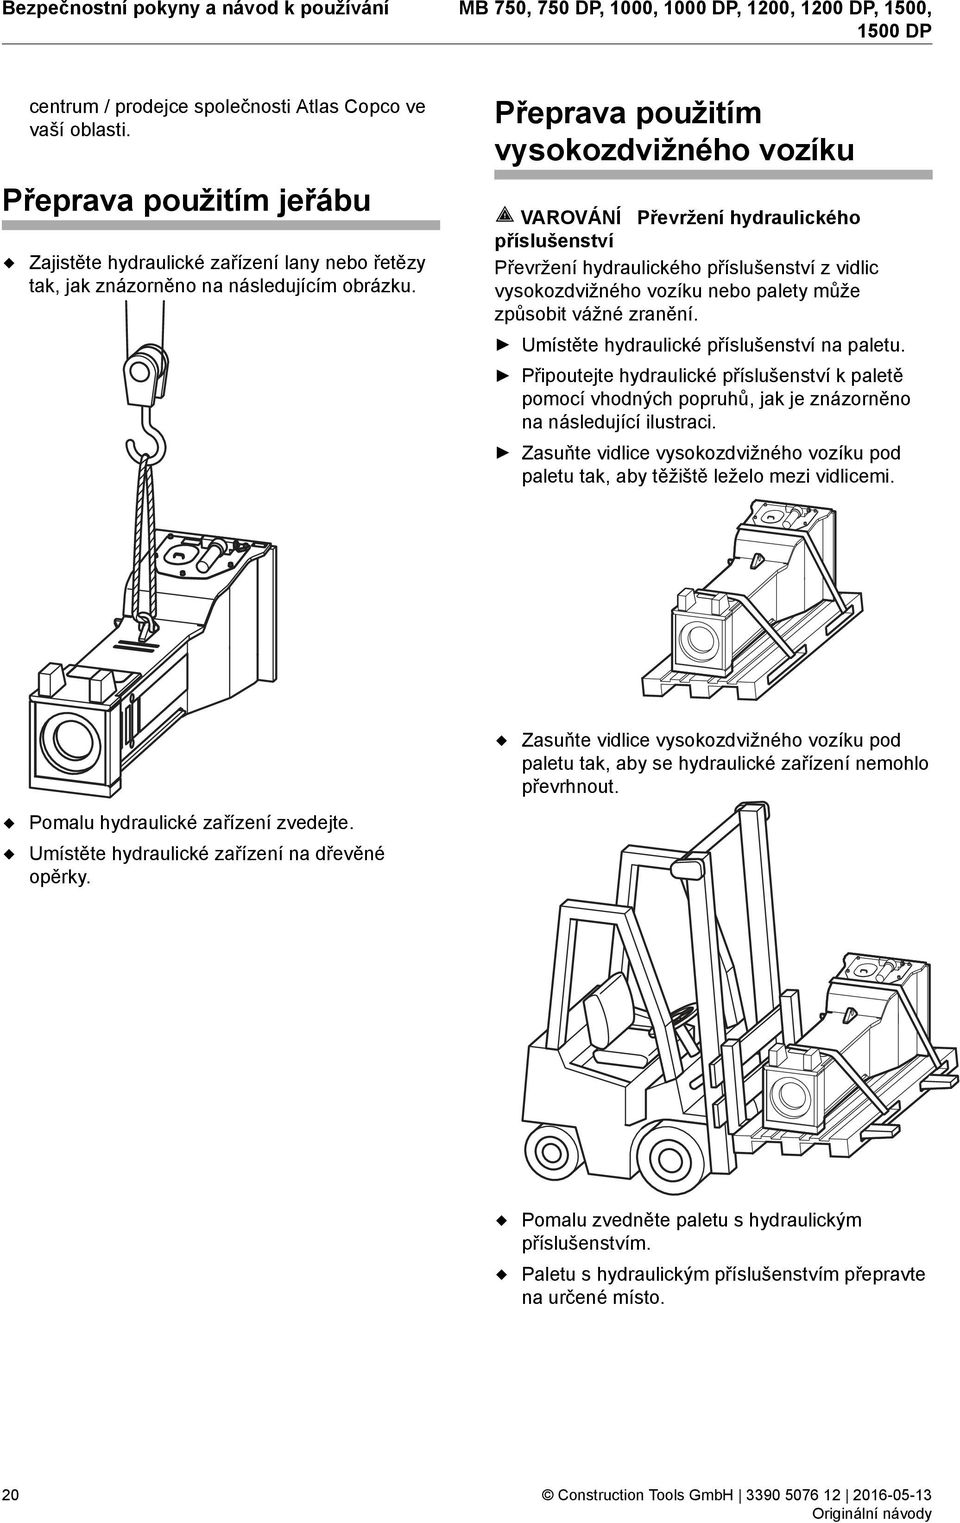 Přeprava použitím vysokozdvižného vozíku VAROVÁNÍ Převržení hydraulického příslušenství Převržení hydraulického příslušenství z vidlic vysokozdvižného vozíku nebo palety může způsobit vážné zranění.